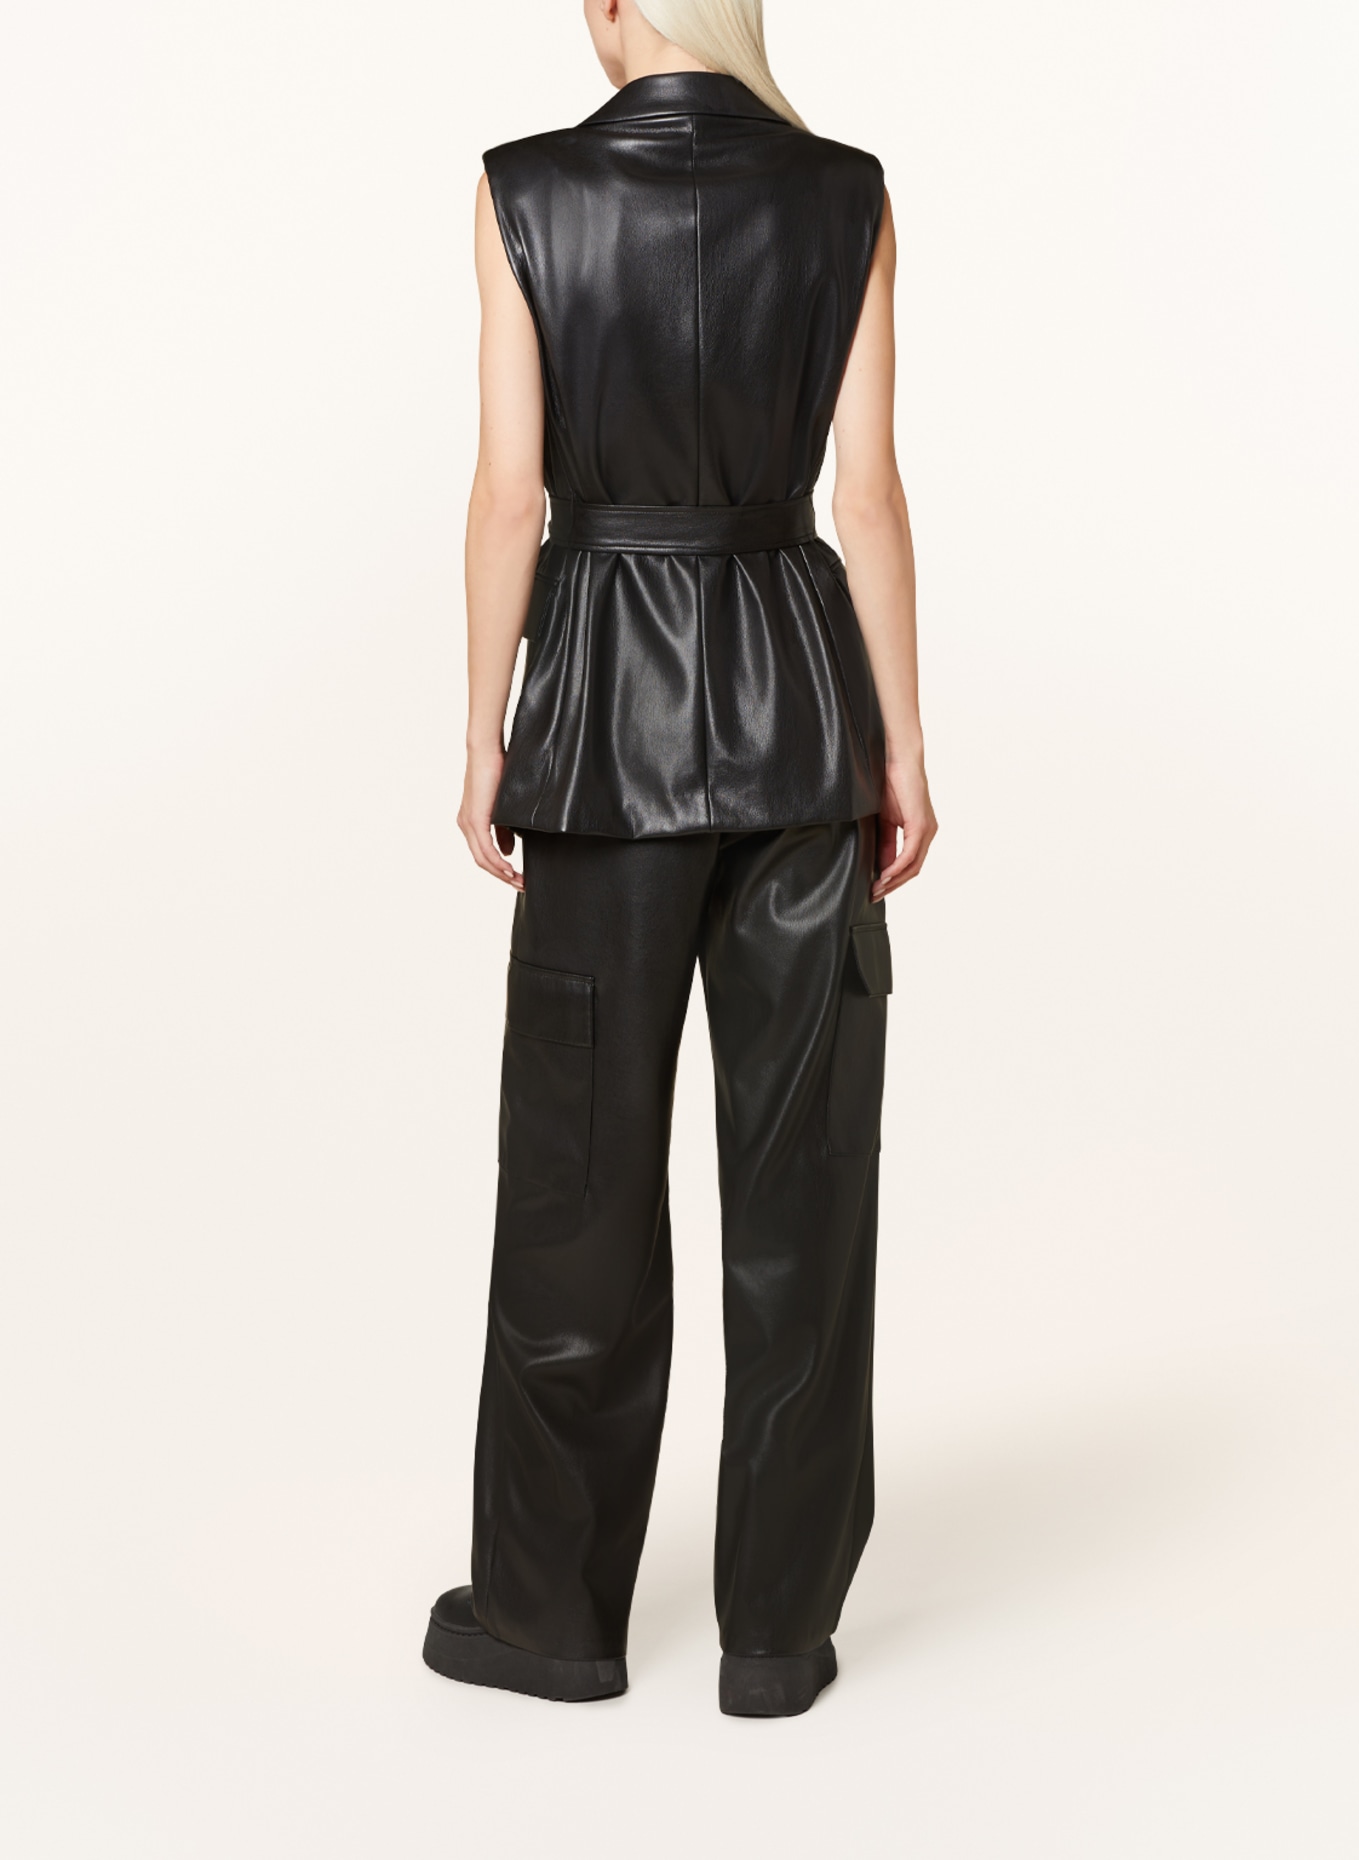 MRS & HUGS Blazer vest in leather look, Color: BLACK (Image 3)